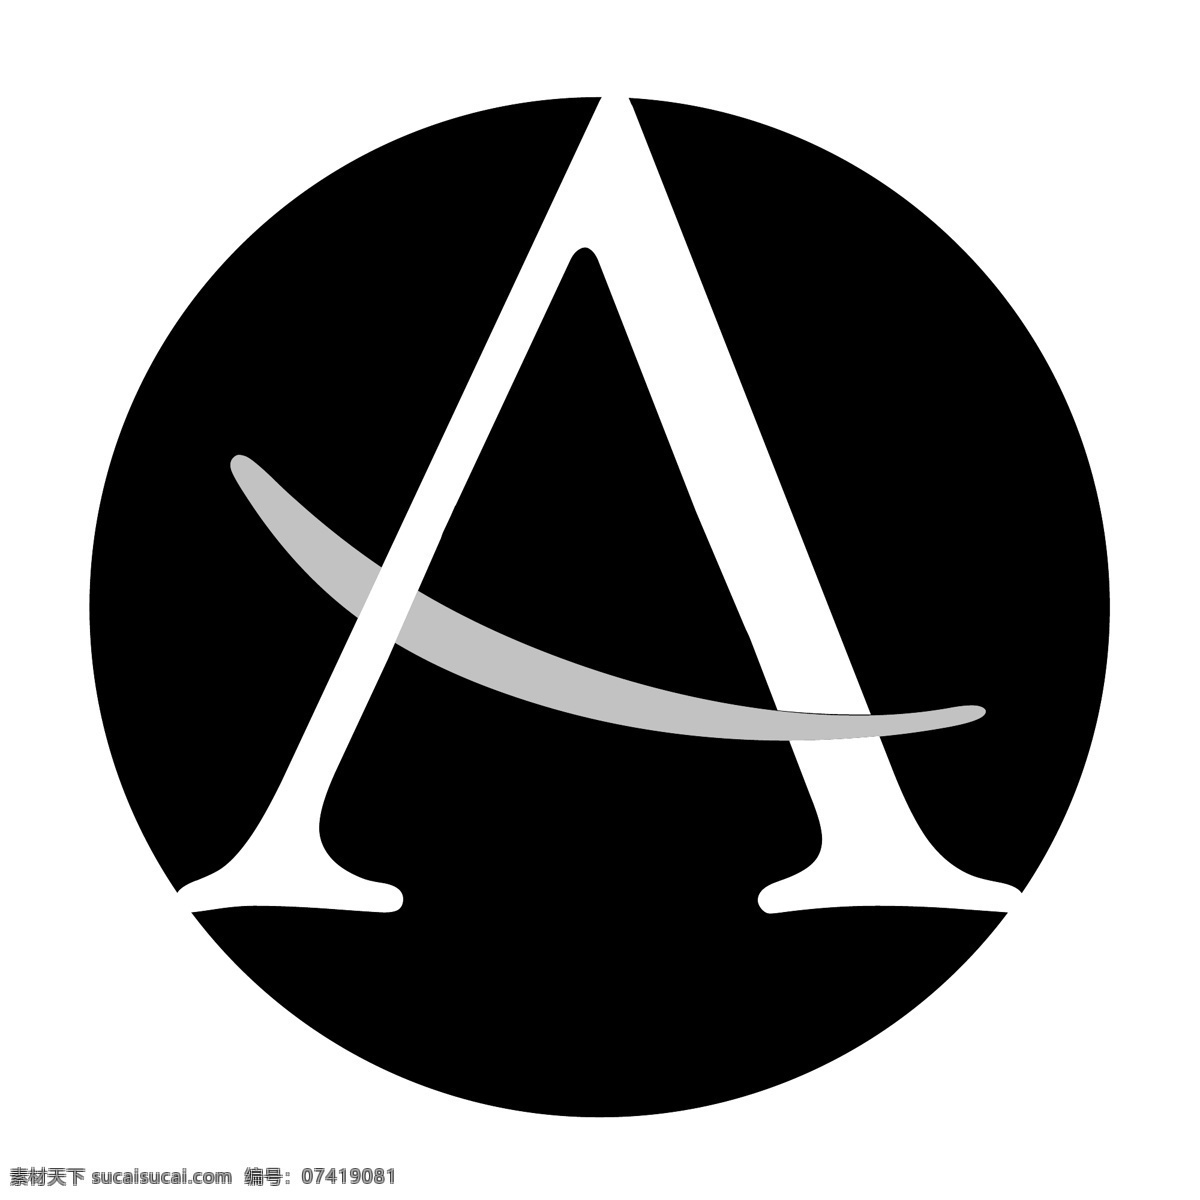 服装标识 行业标志 logo 标志 logo标志 设计素材 标识设计 平面设计 黑色